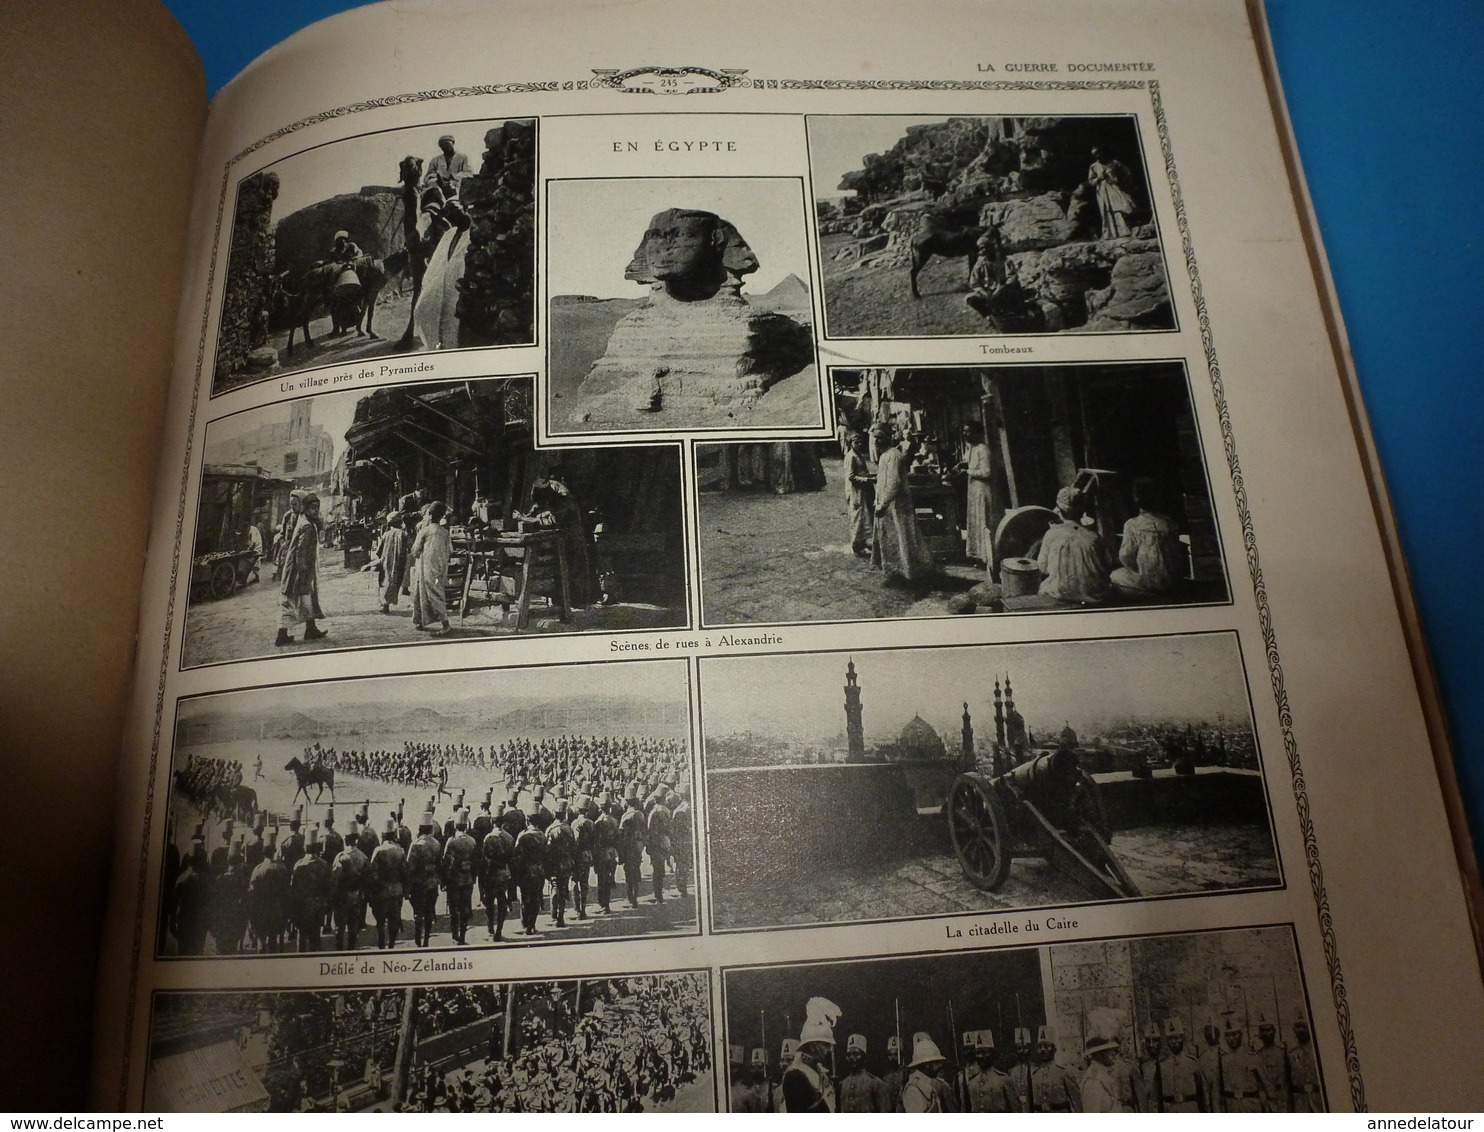 1914-18 LA GUERRE DOCUMENTÉE:Ambulance rapide;Chasseur d'Afrique;Armée-Grèce;Athènes;Sous-marins;Chirurgie de guerre;etc